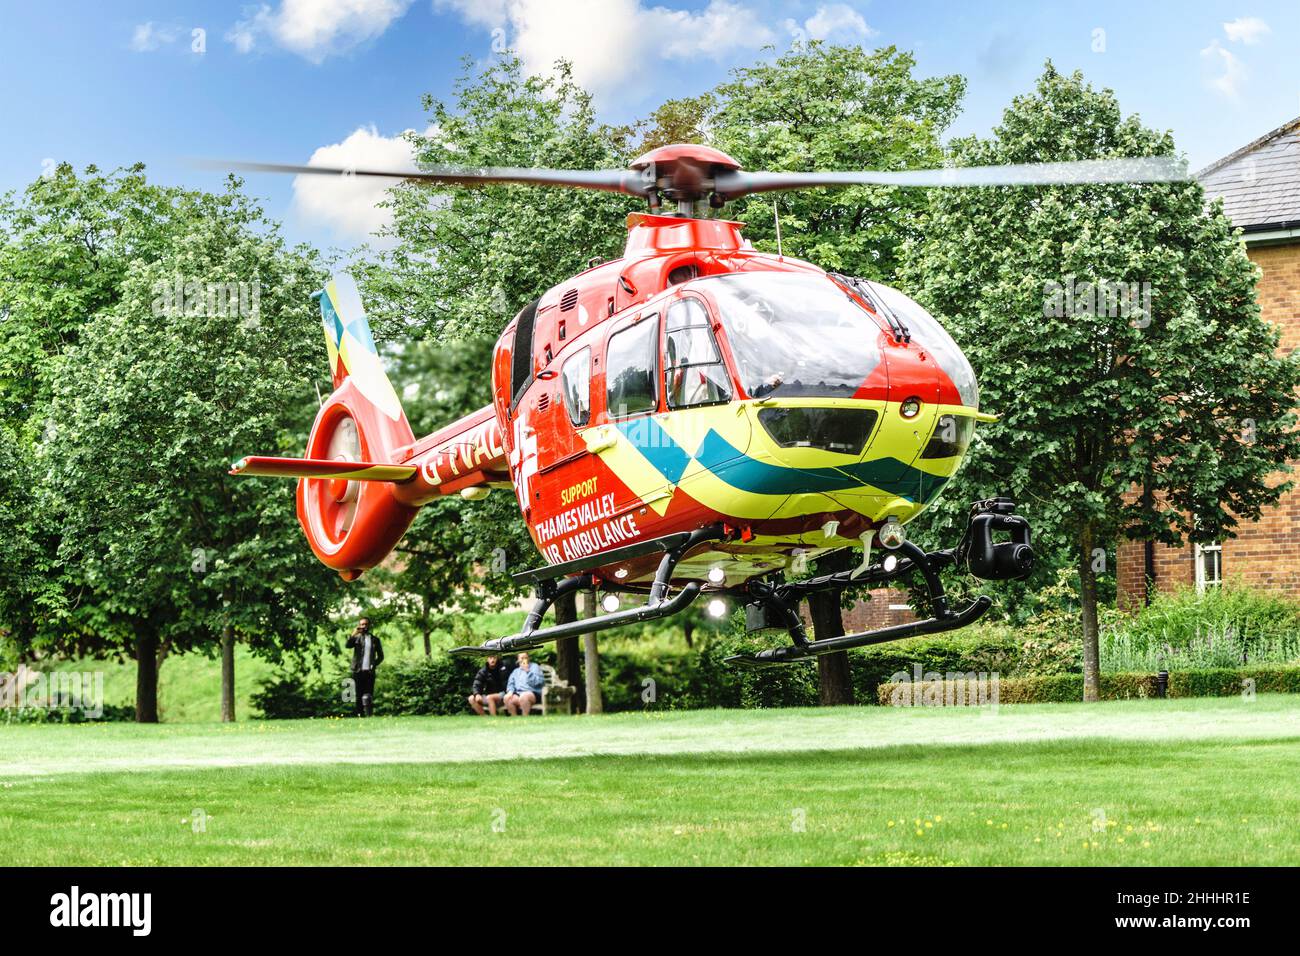 Das Team von Thames Valley Air Ambulance rief zu einer Wohnsiedlung auf, um einen Patienten zu stabilisieren und ins Krankenhaus zu bringen. Stockfoto